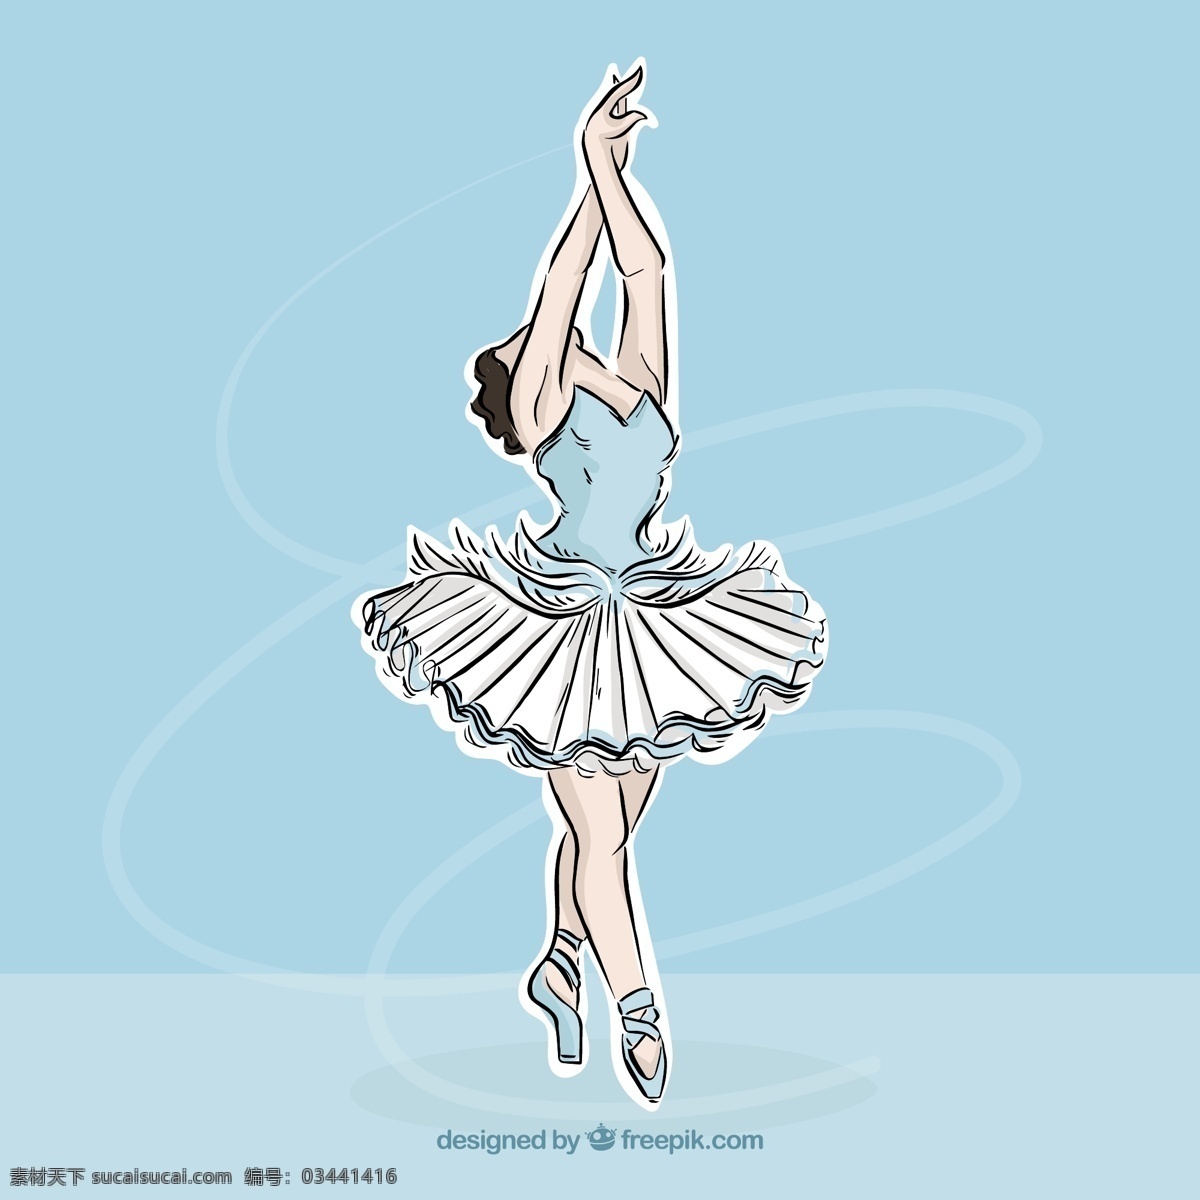 优雅 舞蹈 姿势 手 画 类型 绘画 芭蕾 舞蹈家 艺术家 芭蕾舞 拉 移动 运动 艺术 素描 手绘 跳舞 女孩 舞者 蓬蓬裙 青色 天蓝色